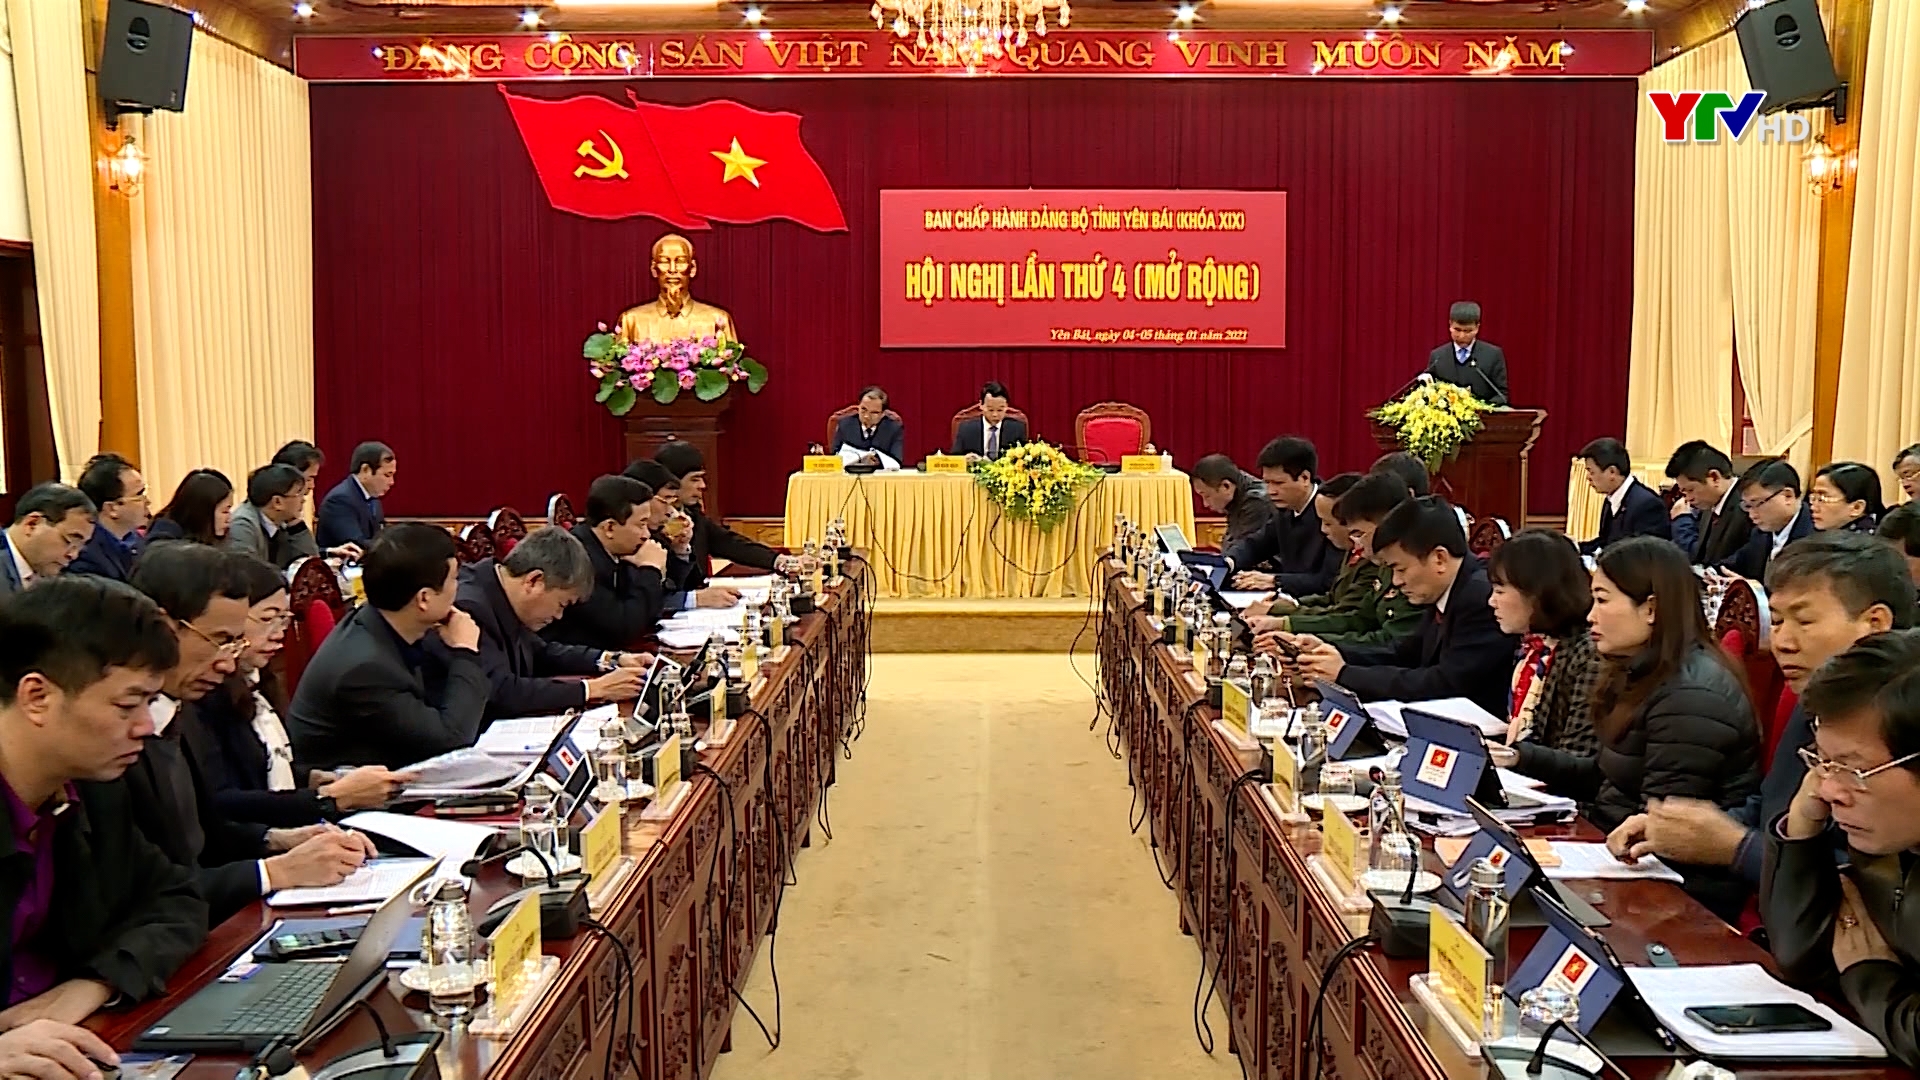 Ngày làm việc thứ 2 - Hội nghị BCH Đảng bộ tỉnh Yên Bái lần thứ 4 (mở rộng): Tổng hợp các ý kiến thảo luận tại tổ